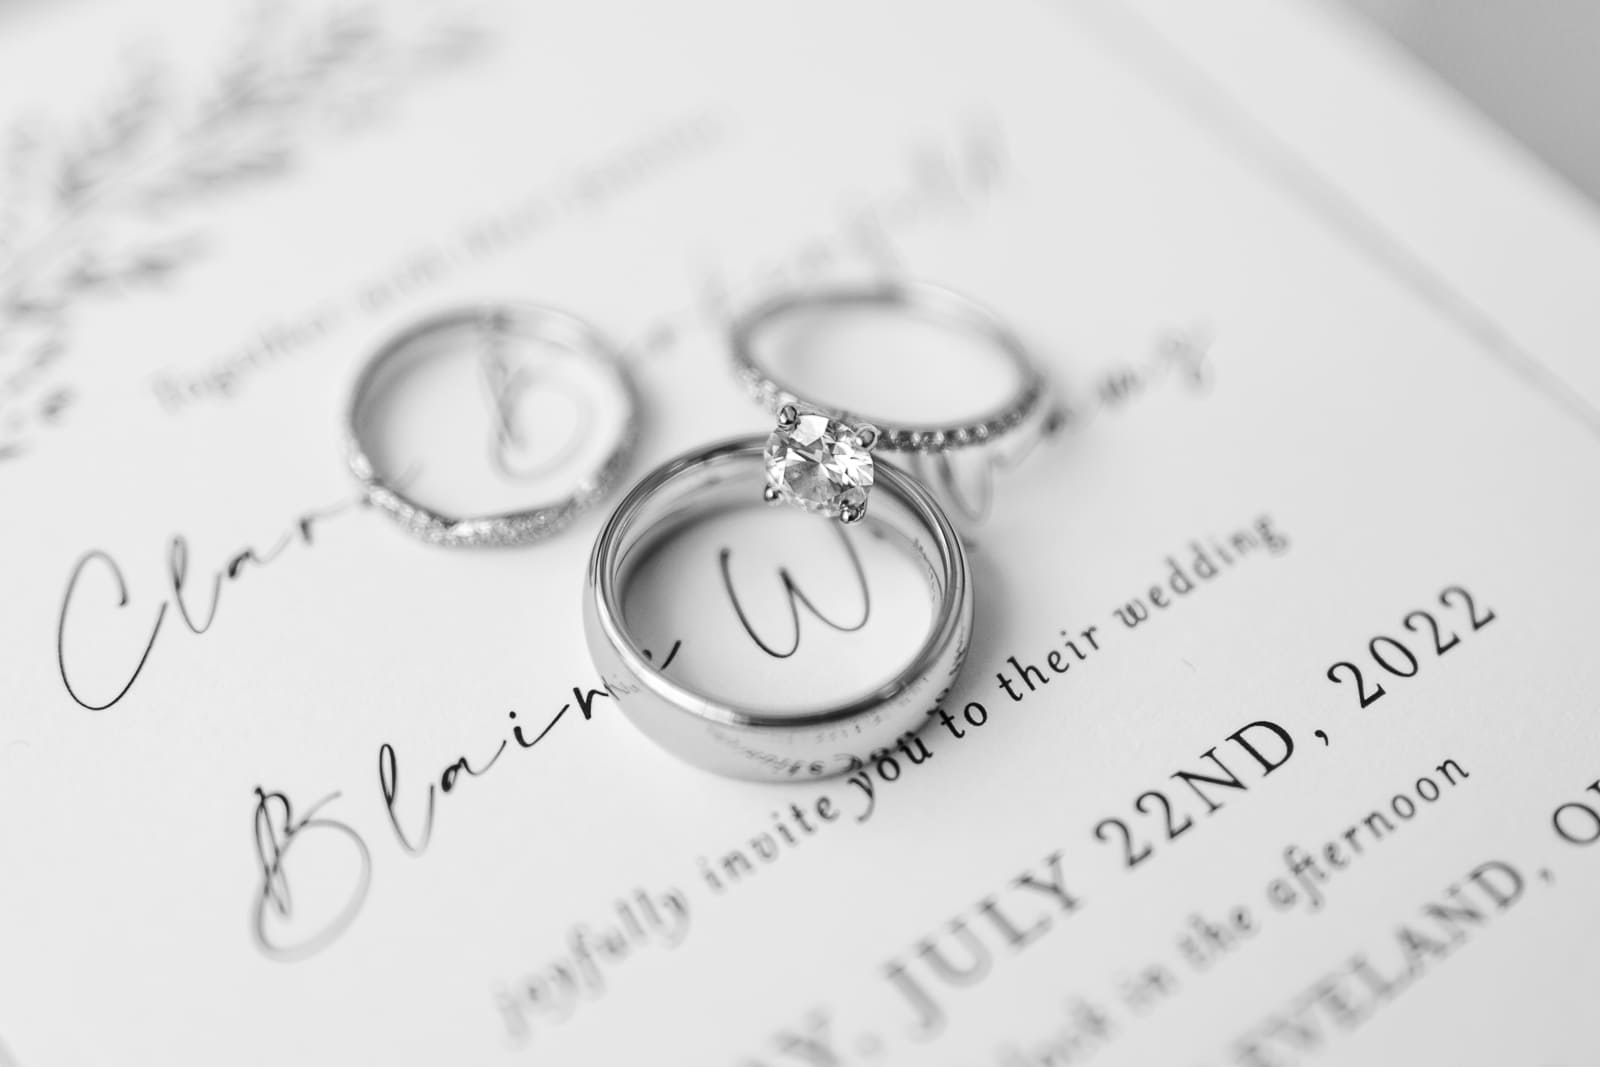 Detailfoto von Eheringen und Verlobungsring auf Hochzeitseinladung in schwarz weiß